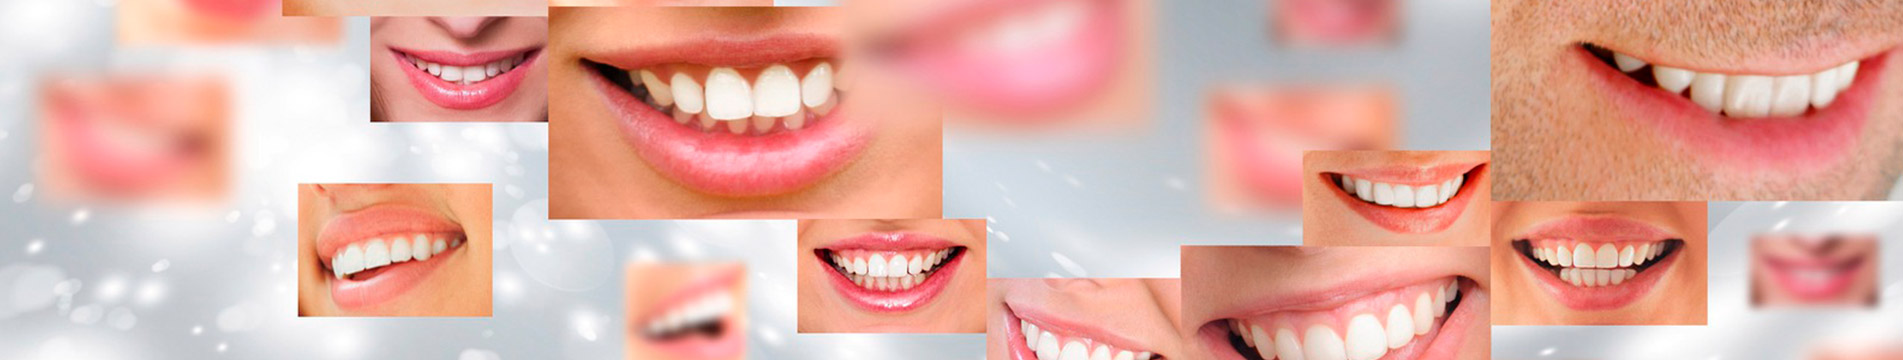 Адентия — полное и частичное отсутствие зубов